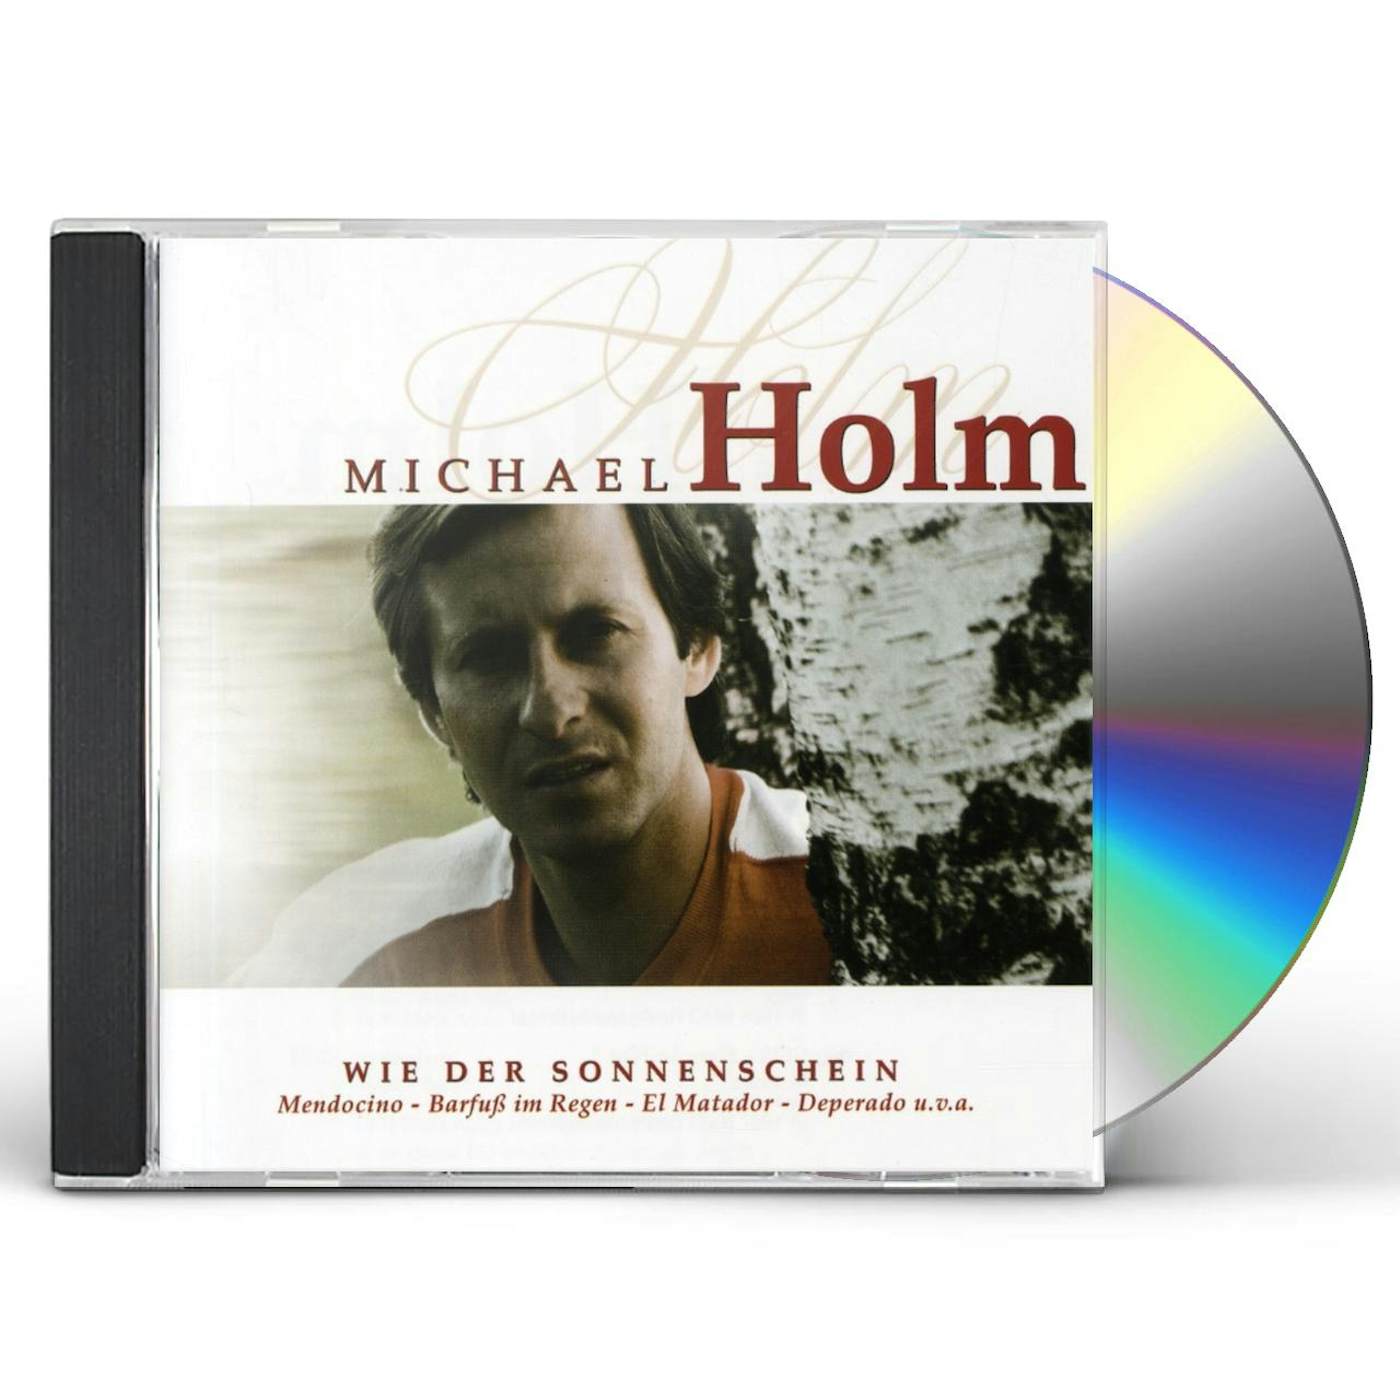 Michael Holm WIE DER SONNENSCHEIN CD